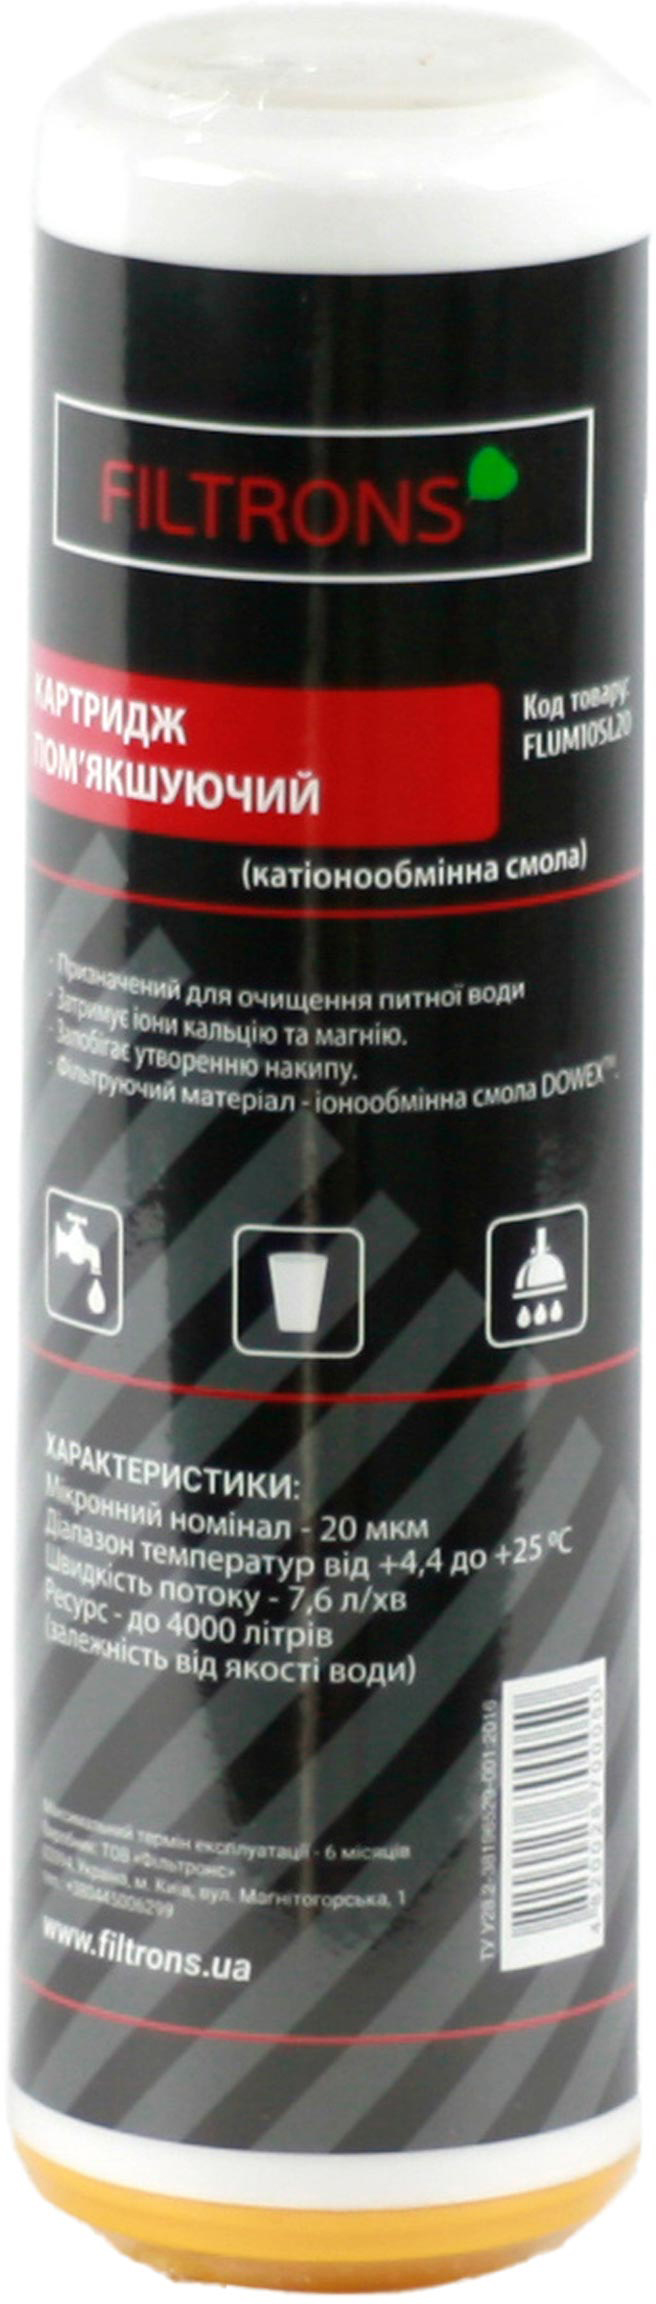 Цена картридж для фильтра Filtrons 10″ SLIM 20 мкм (FLUM10SL20P) в Киеве